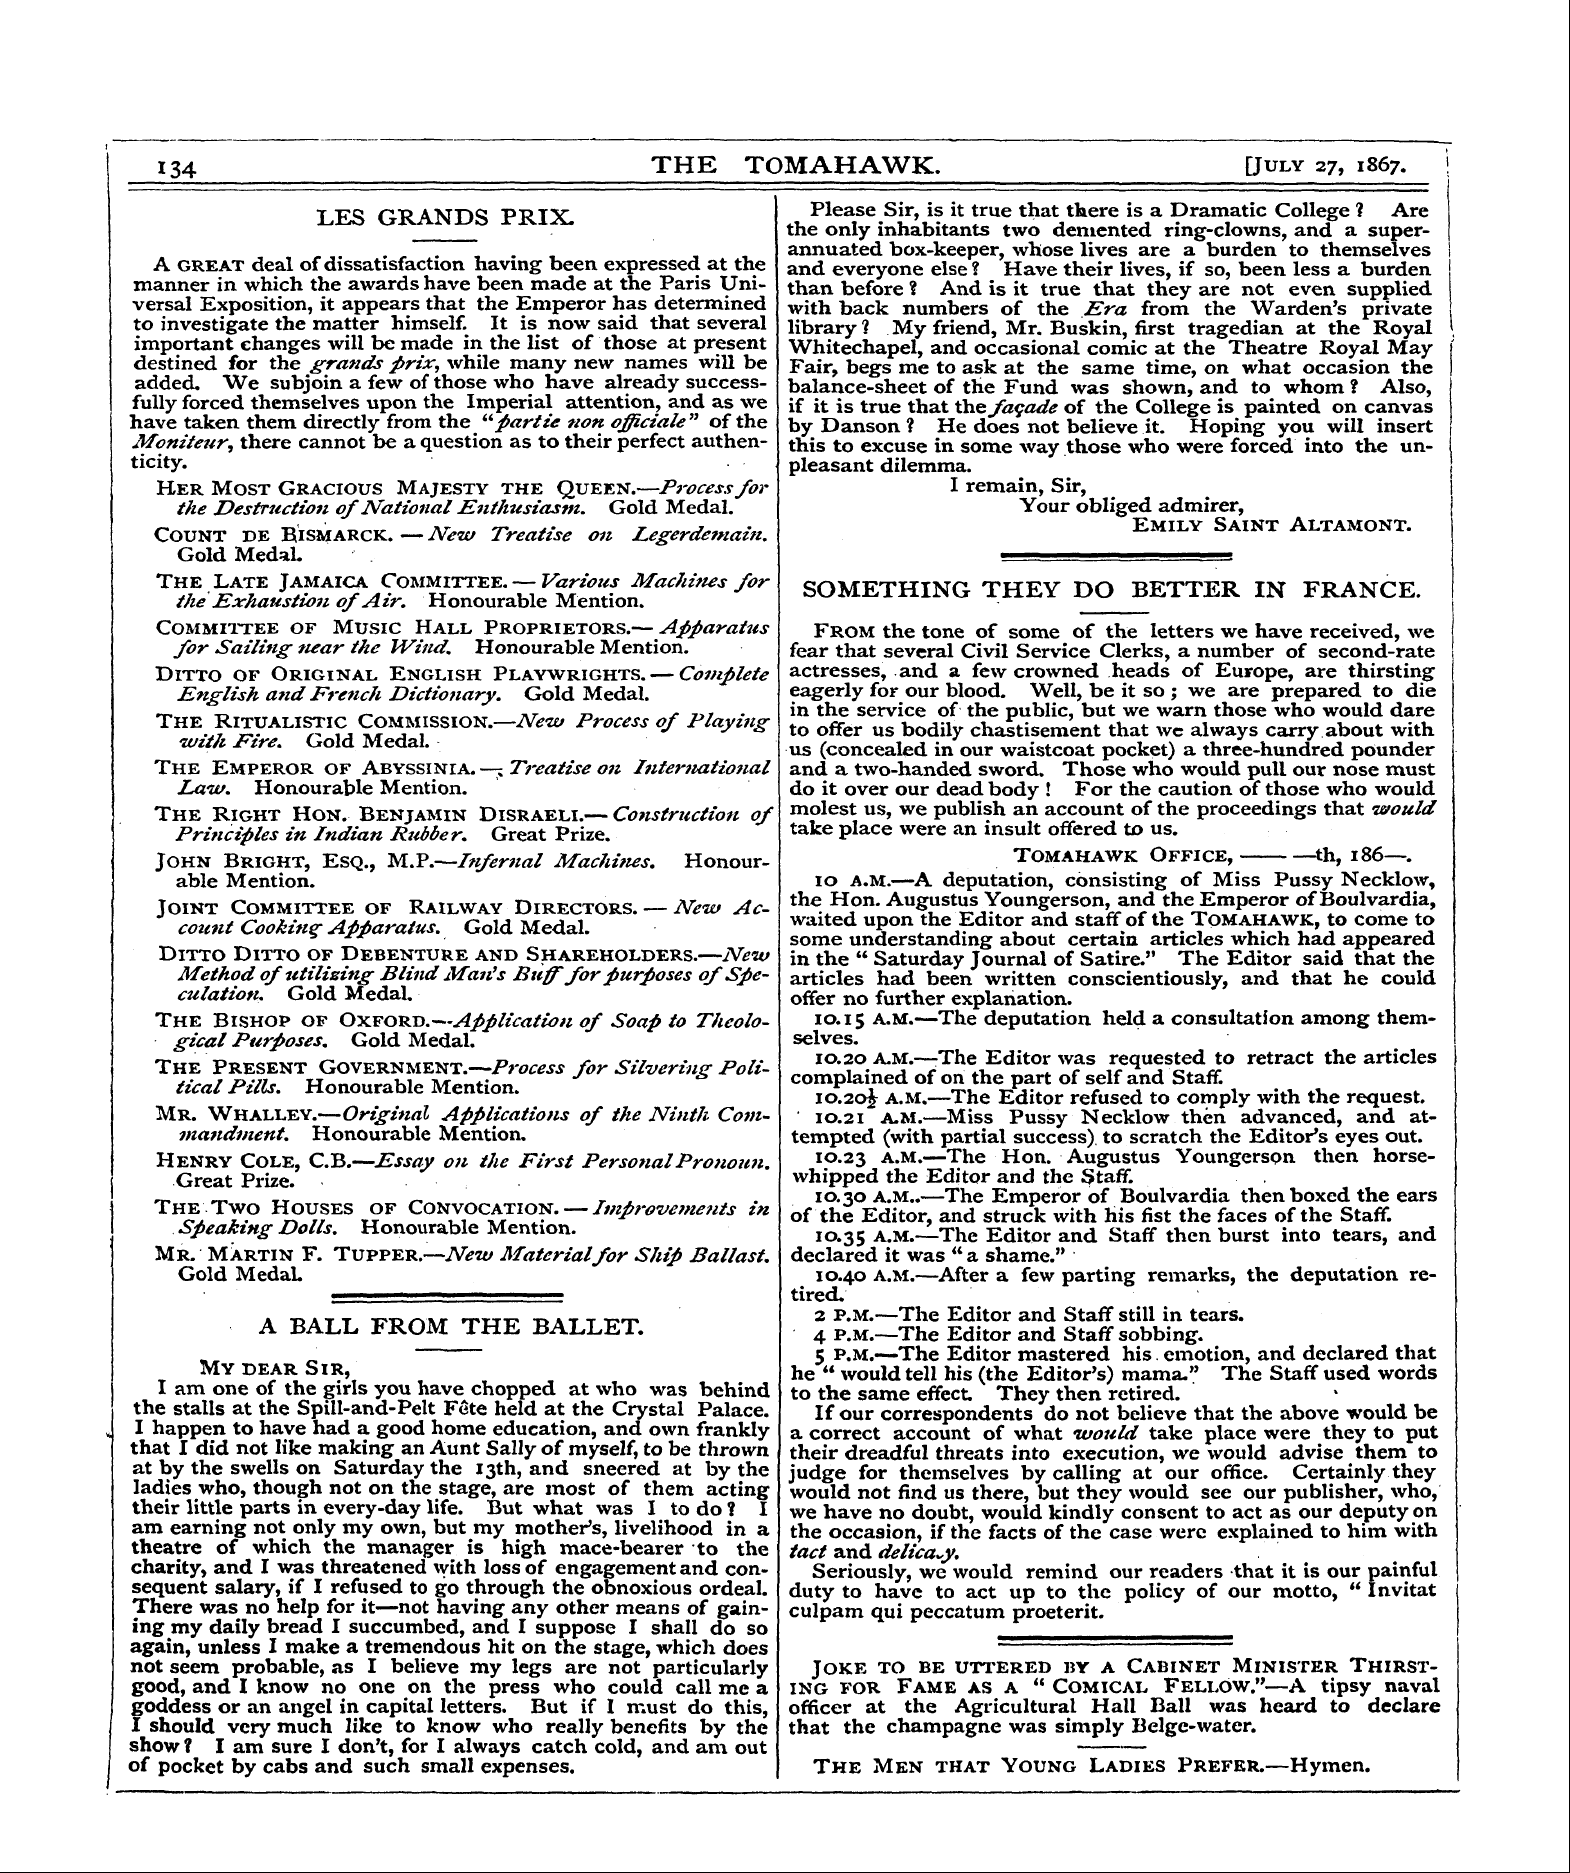 Tomahawk (1867-1870): jS F Y, 1st edition - Les Grands Prix.